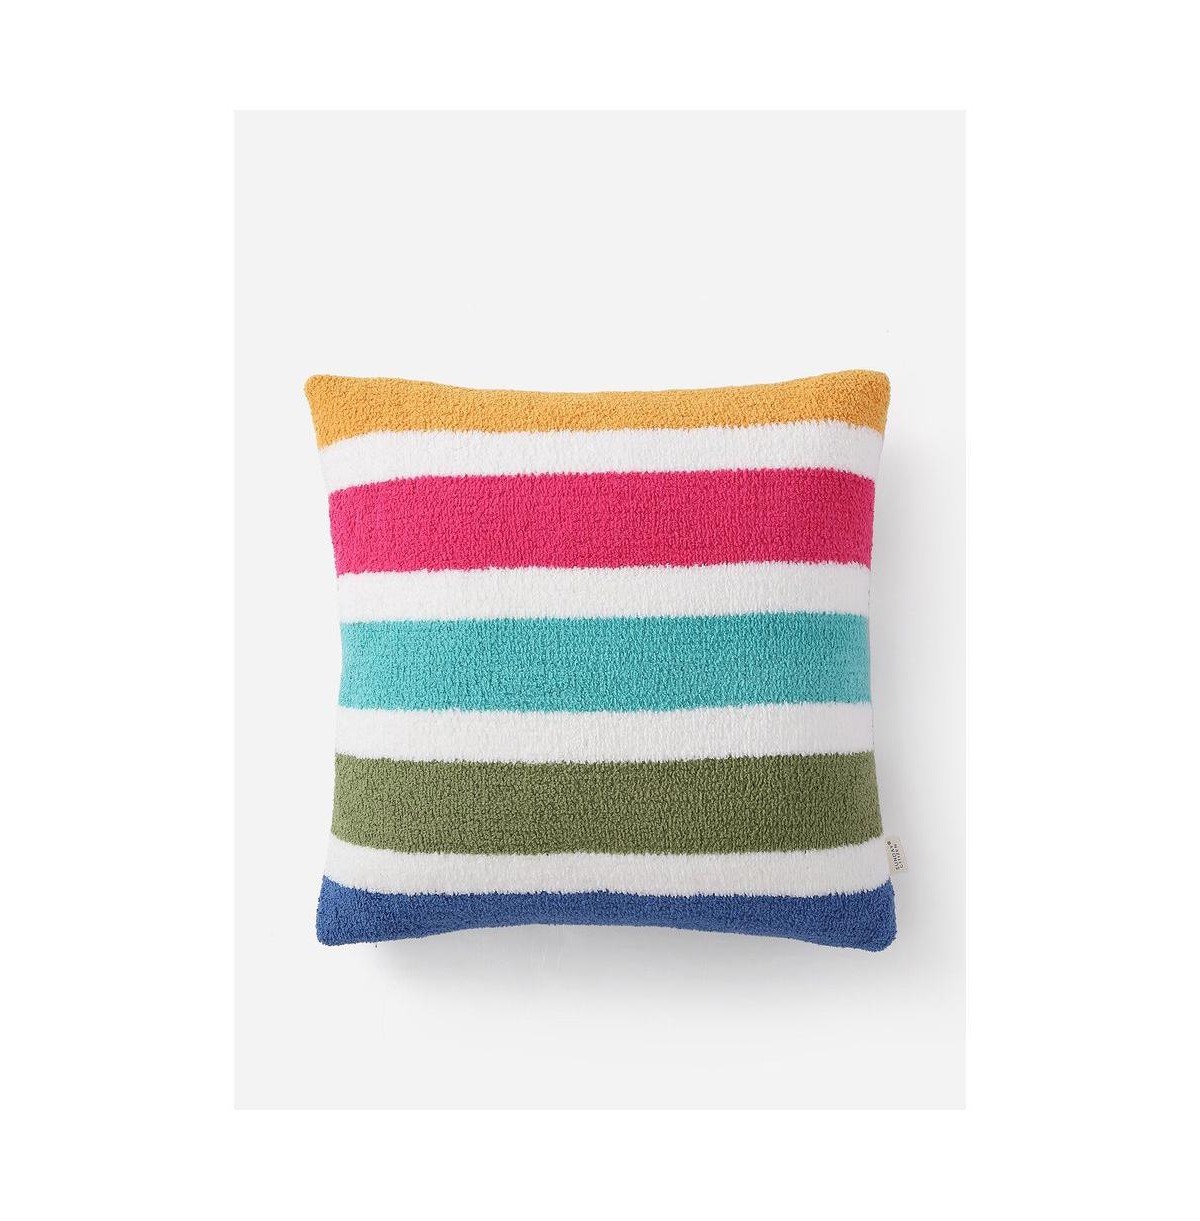 Sunday Citizen Burano Decorative Pillow, 20" X 20" In Vibrant